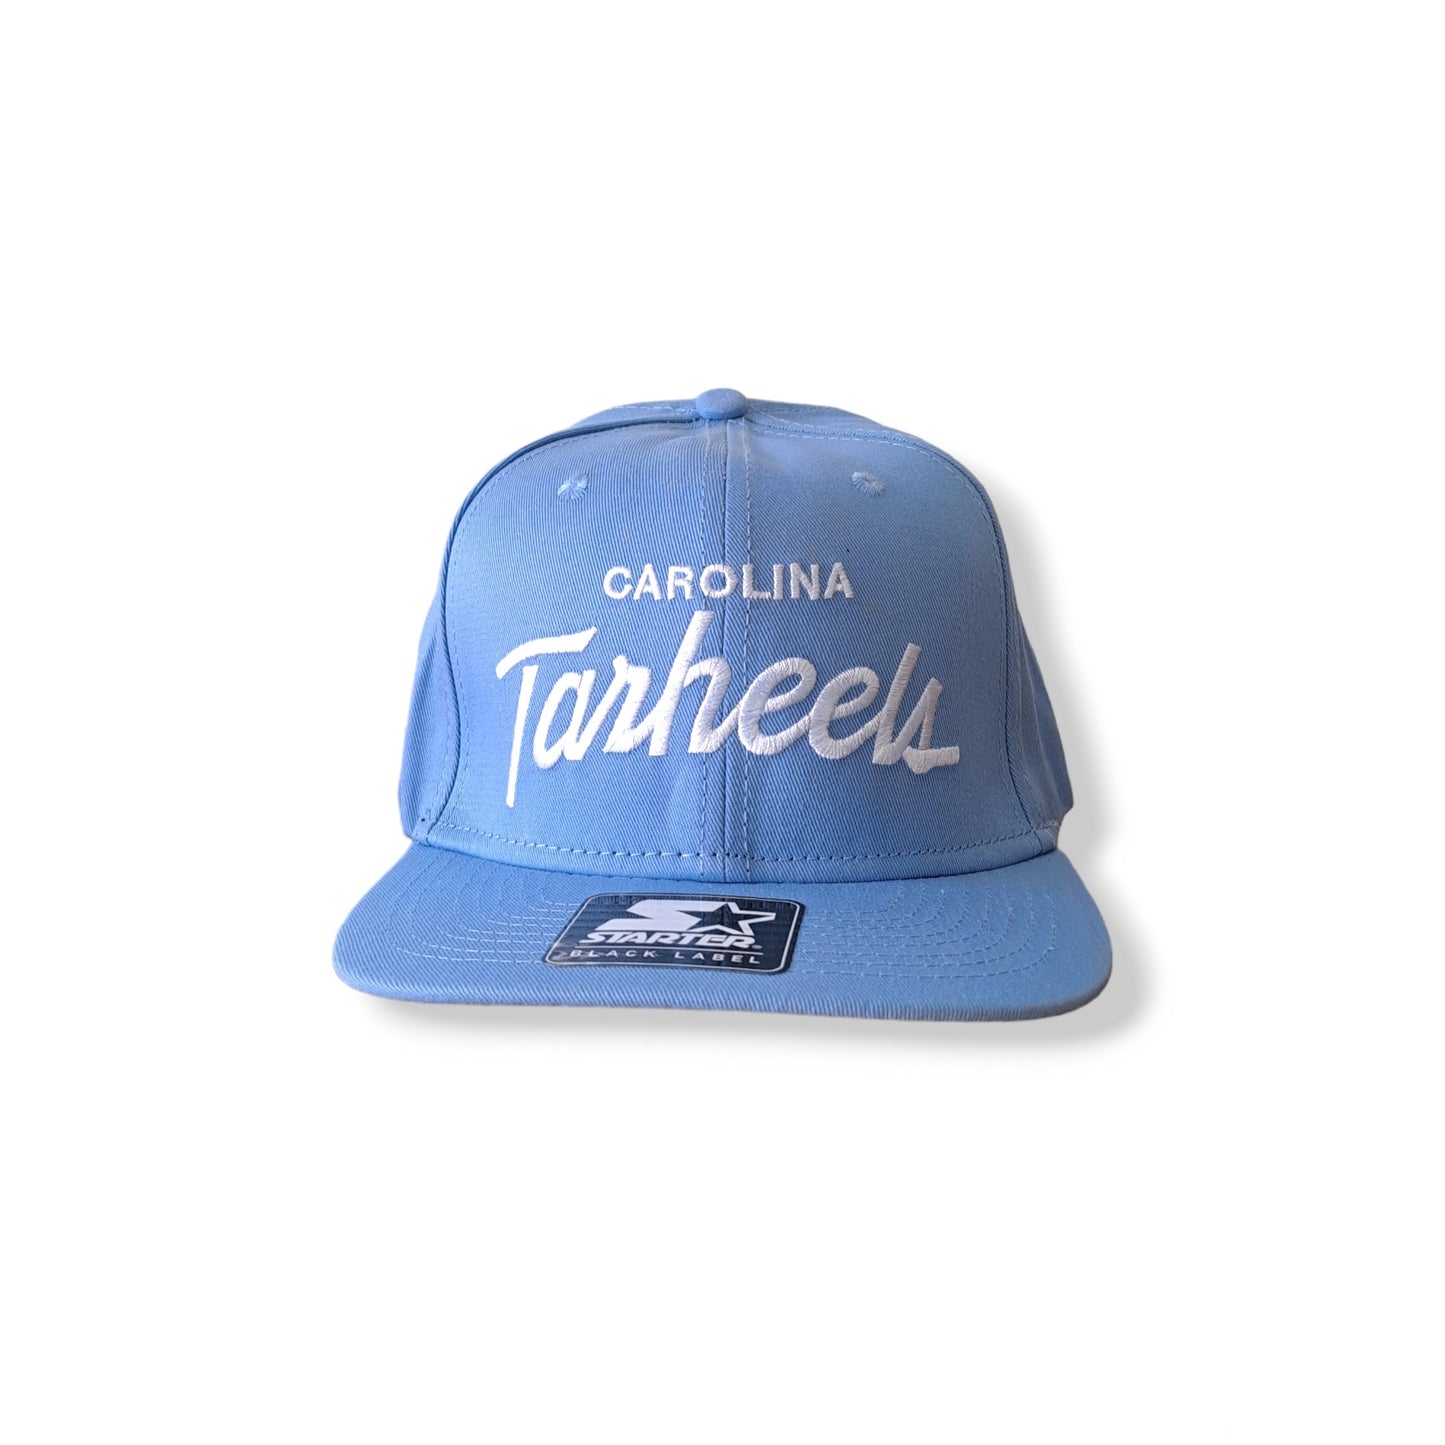 Tarheels Cap